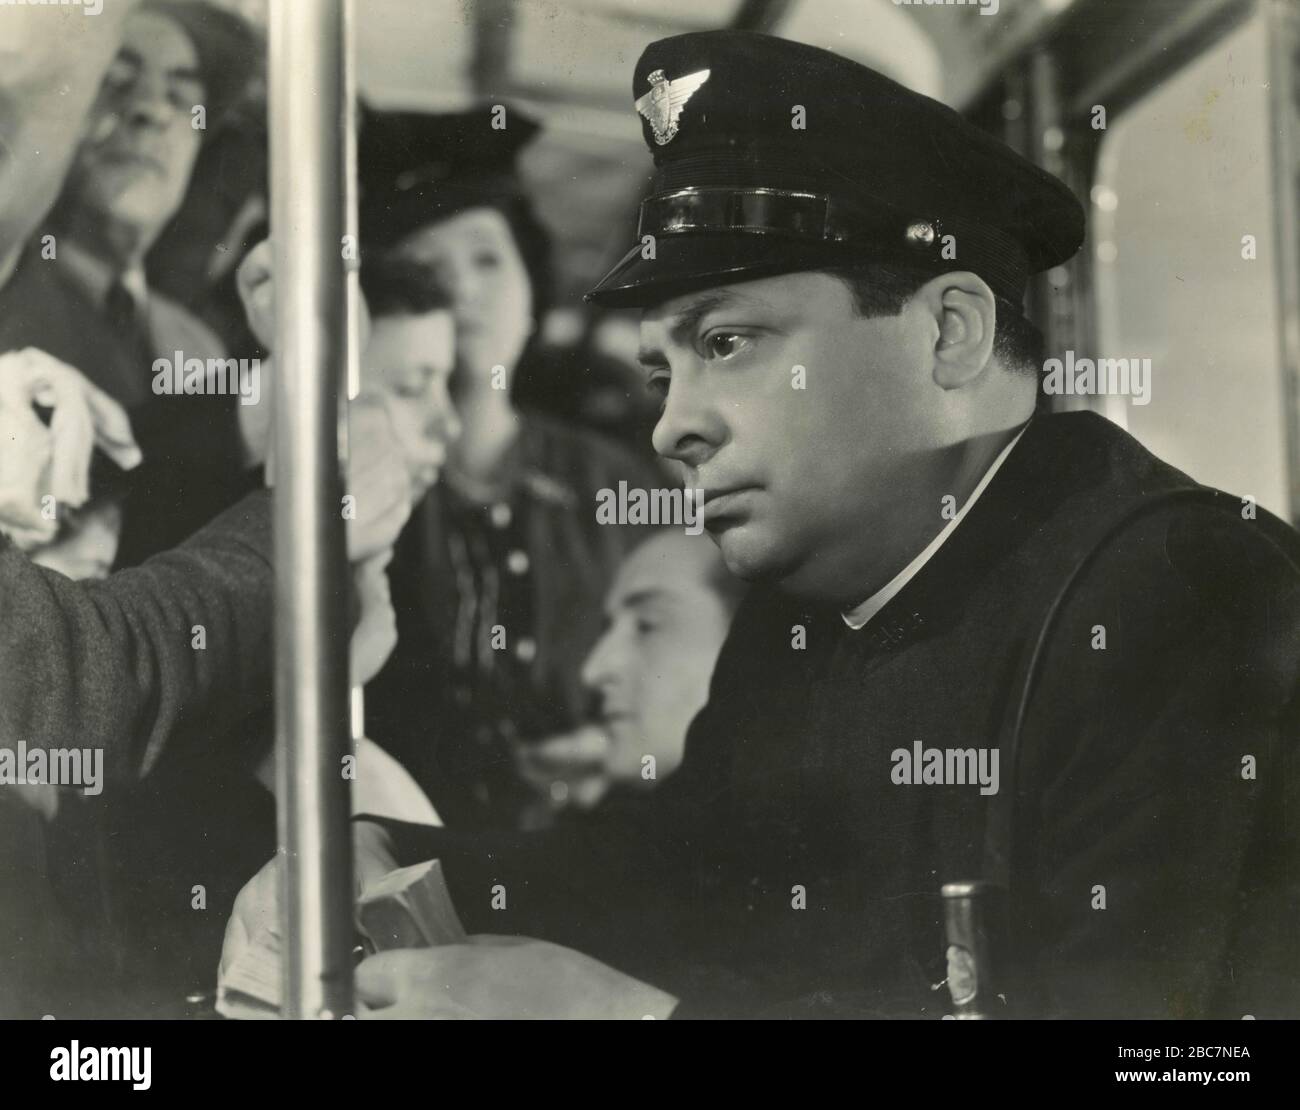 Italian actor Aldo Fabrizi in the movie Avanti c'è posto (Before the Foreman), Italy 1942 Stock Photo